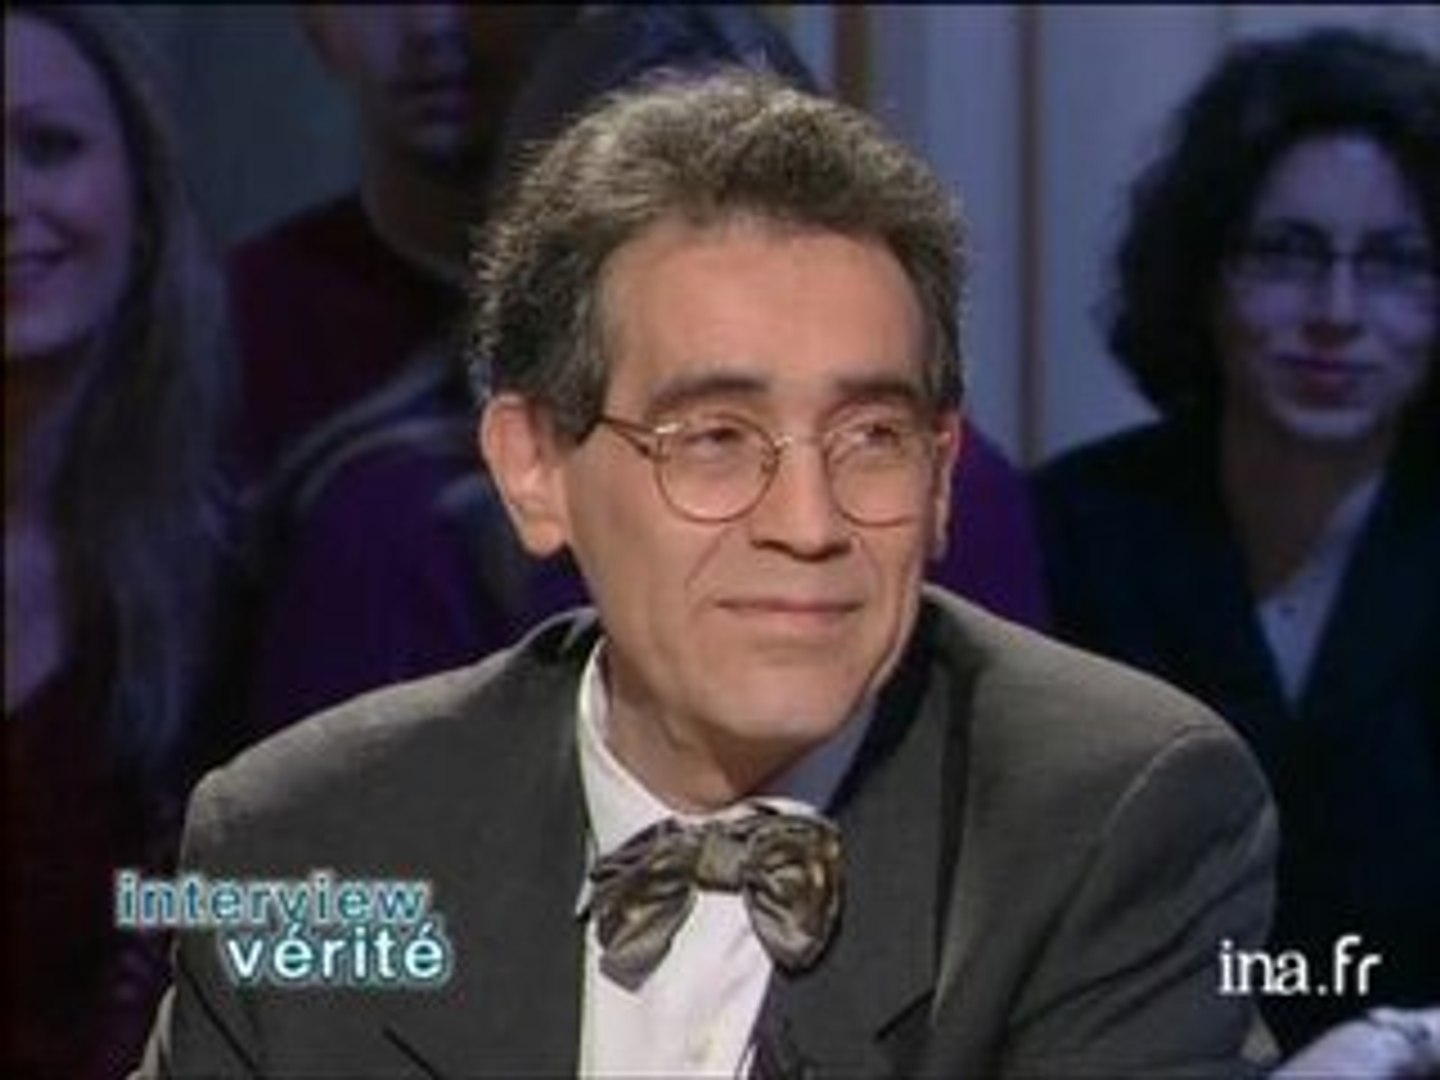 Interview vérité Jacques Colin - Vidéo Dailymotion